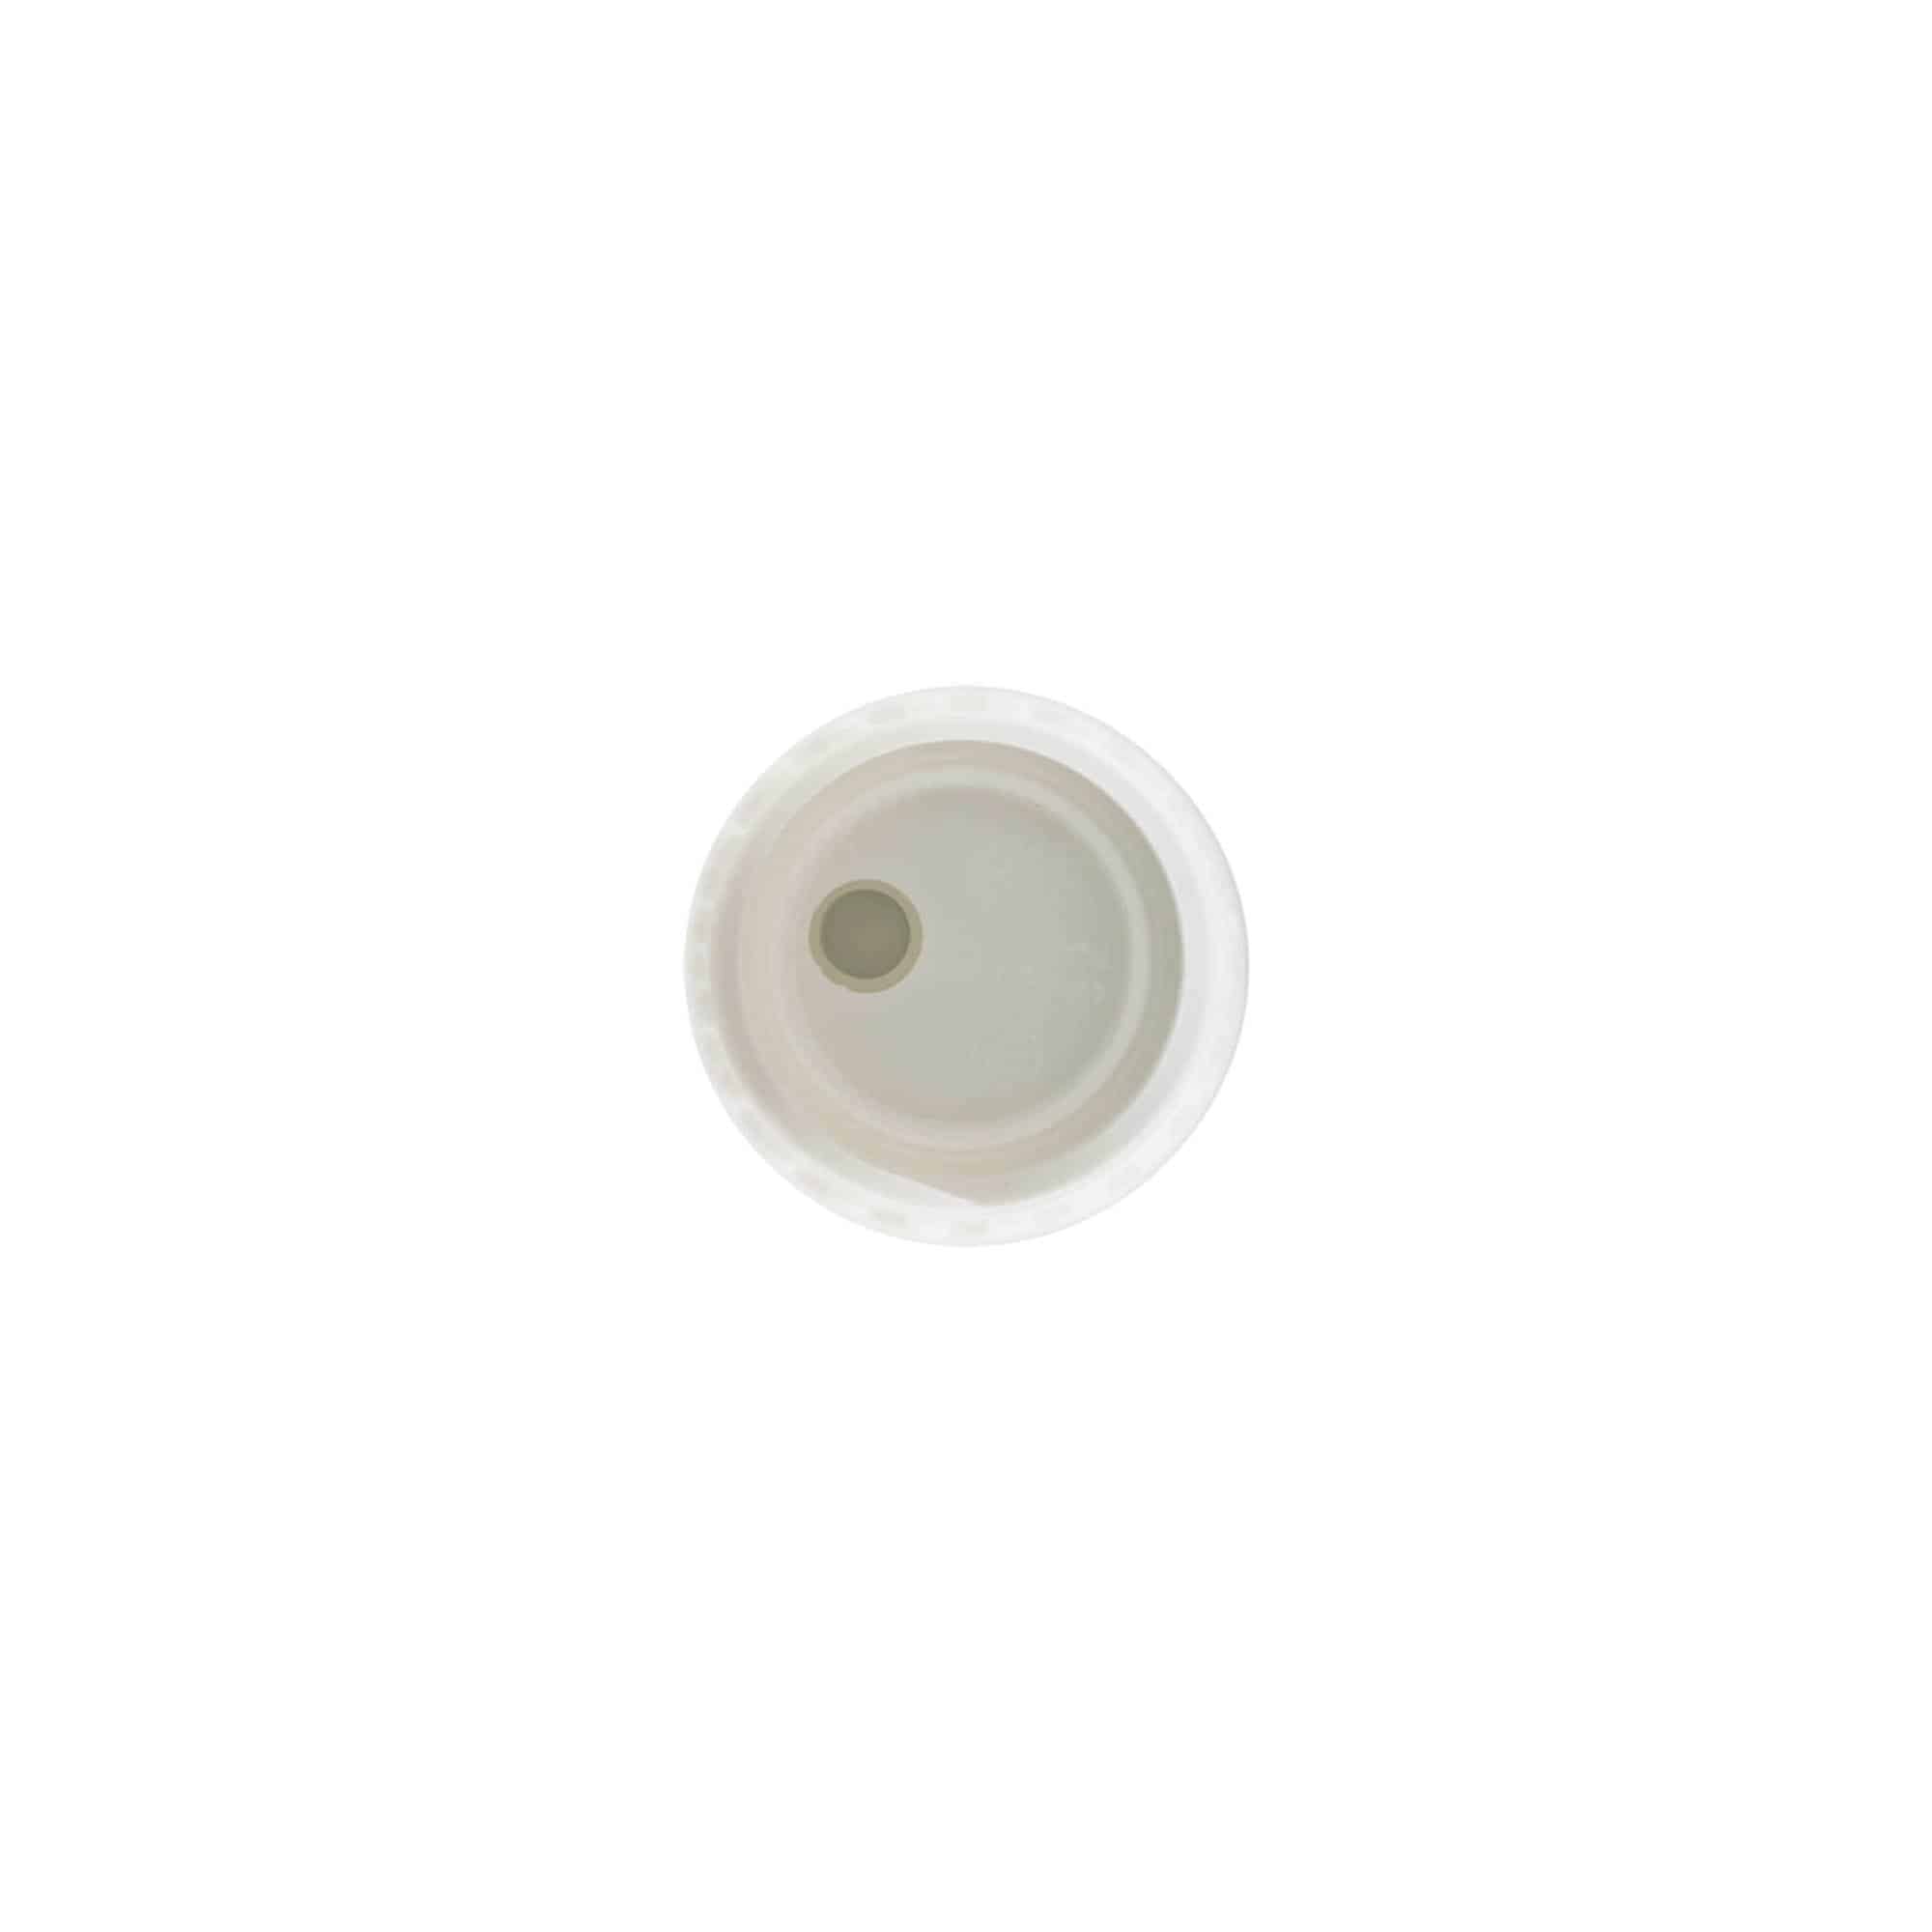 Šroubovací uzávěr Disc Top, plast PP, bílý, pro ústí: GPI 24/410